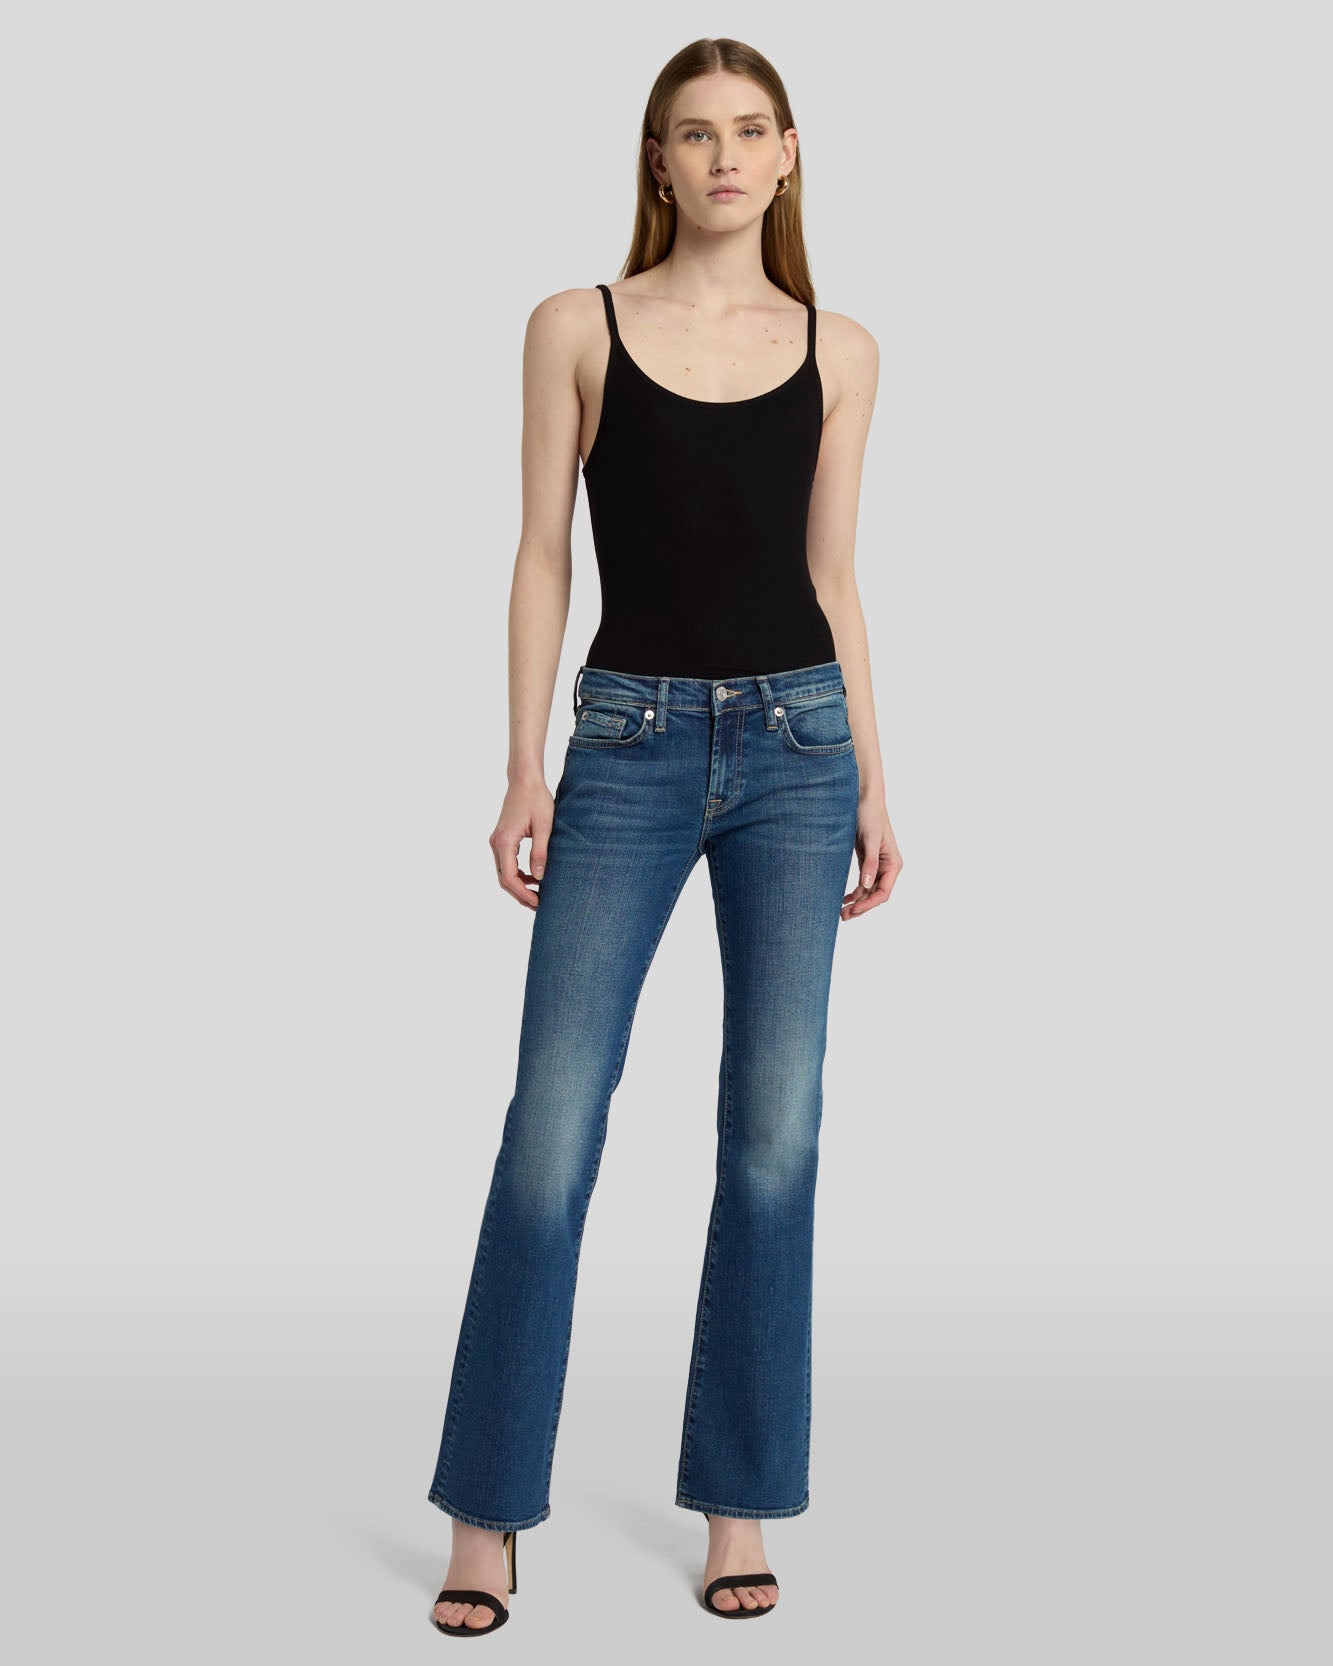 Women's Low Rise Jeans - Shop Jeans Online